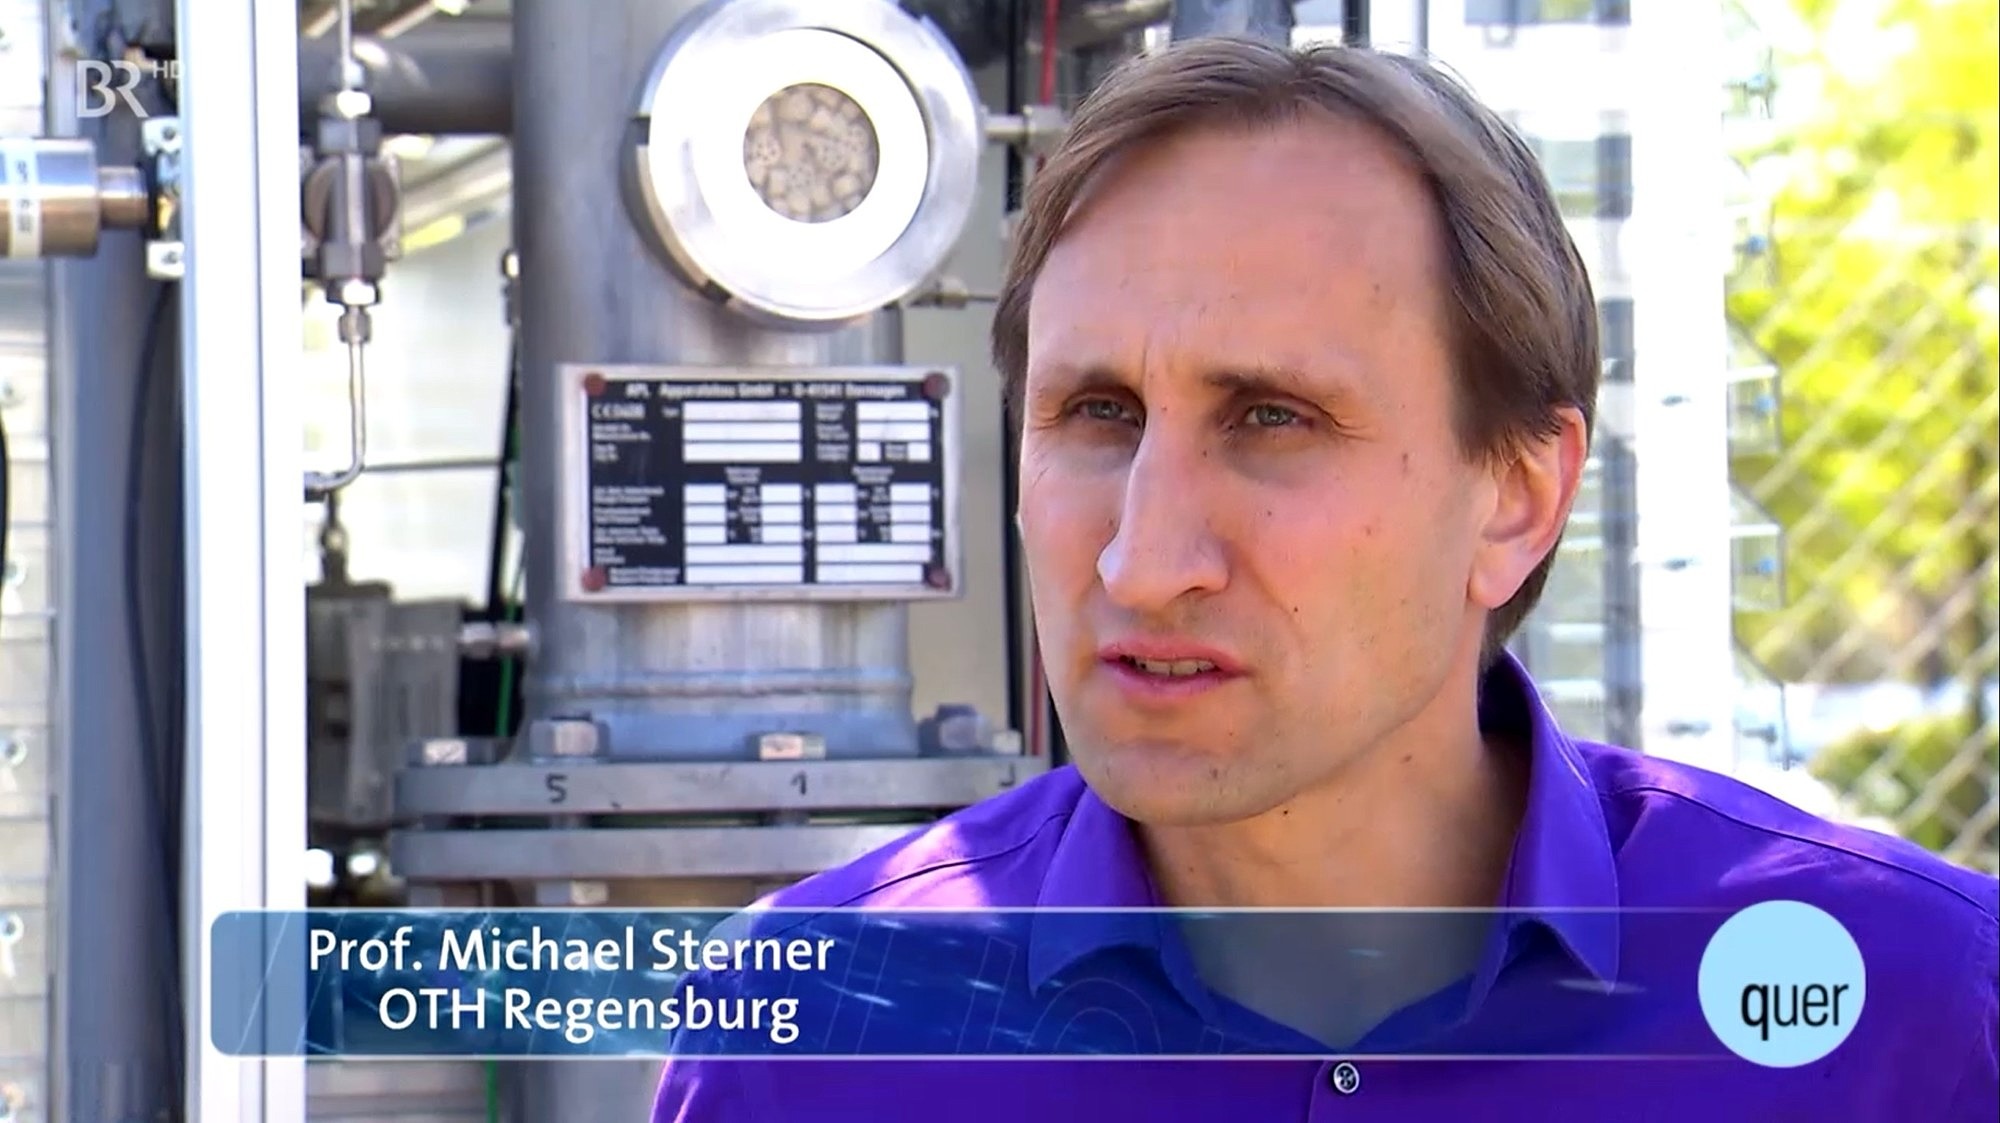 Zum Artikel "ORBIT-Reaktor im BR – Pressetermin am 15. Mai in Regensburg"